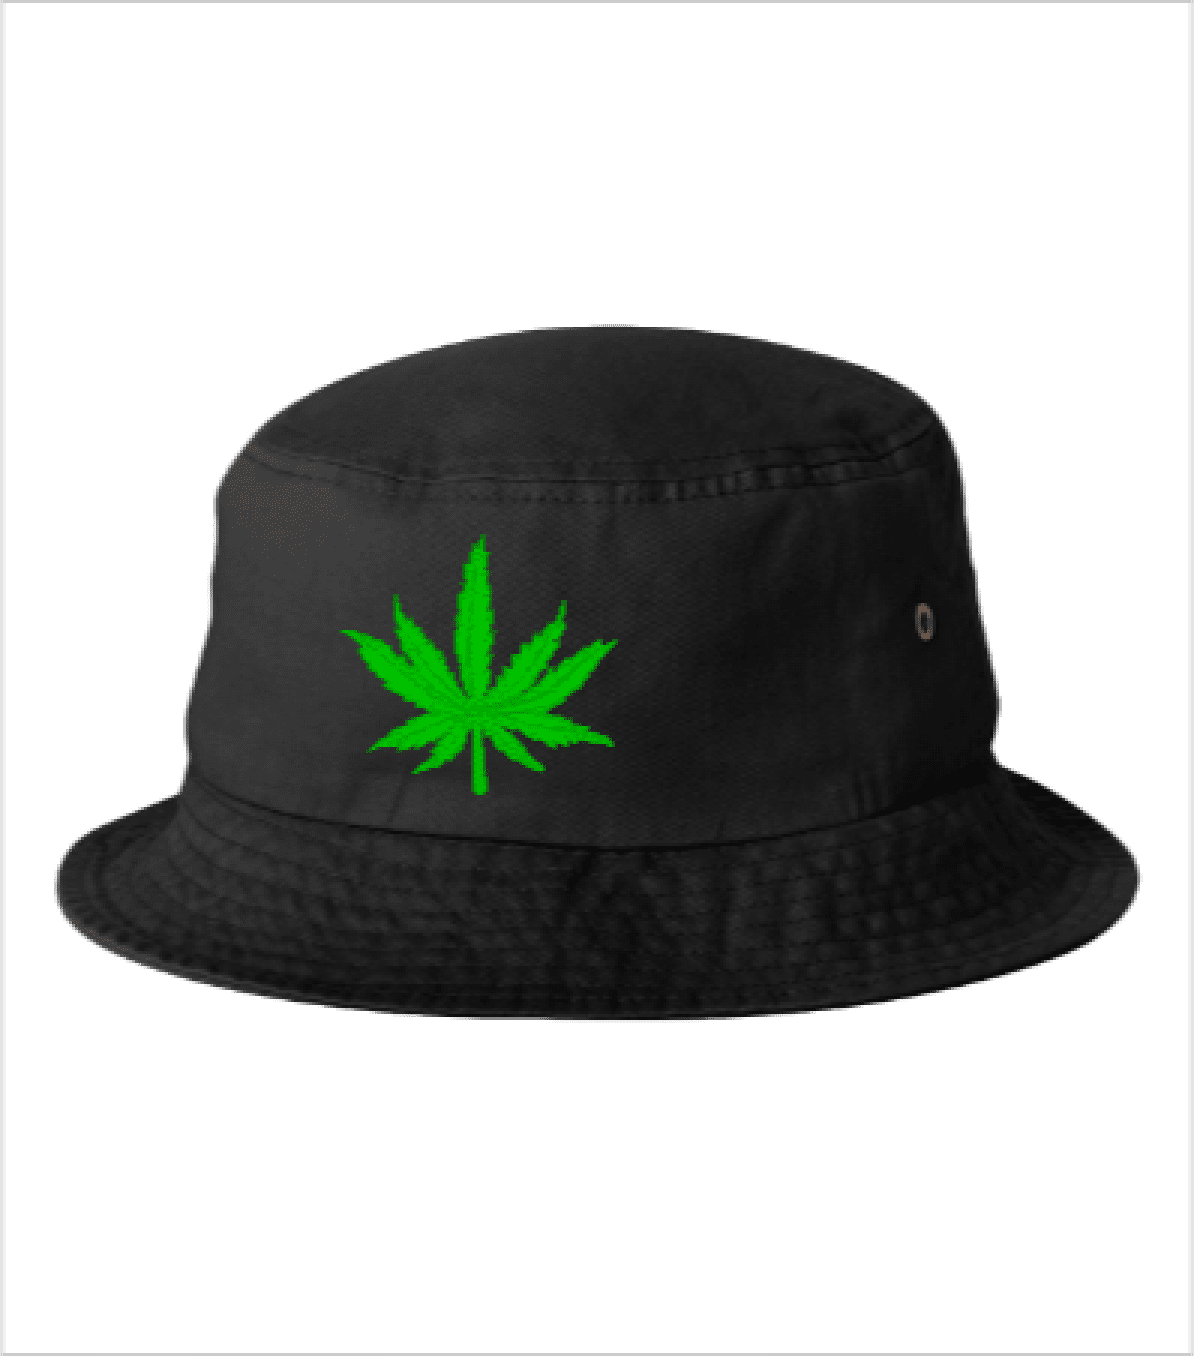 Kush Dispensary Cannabis Merchandise Hat